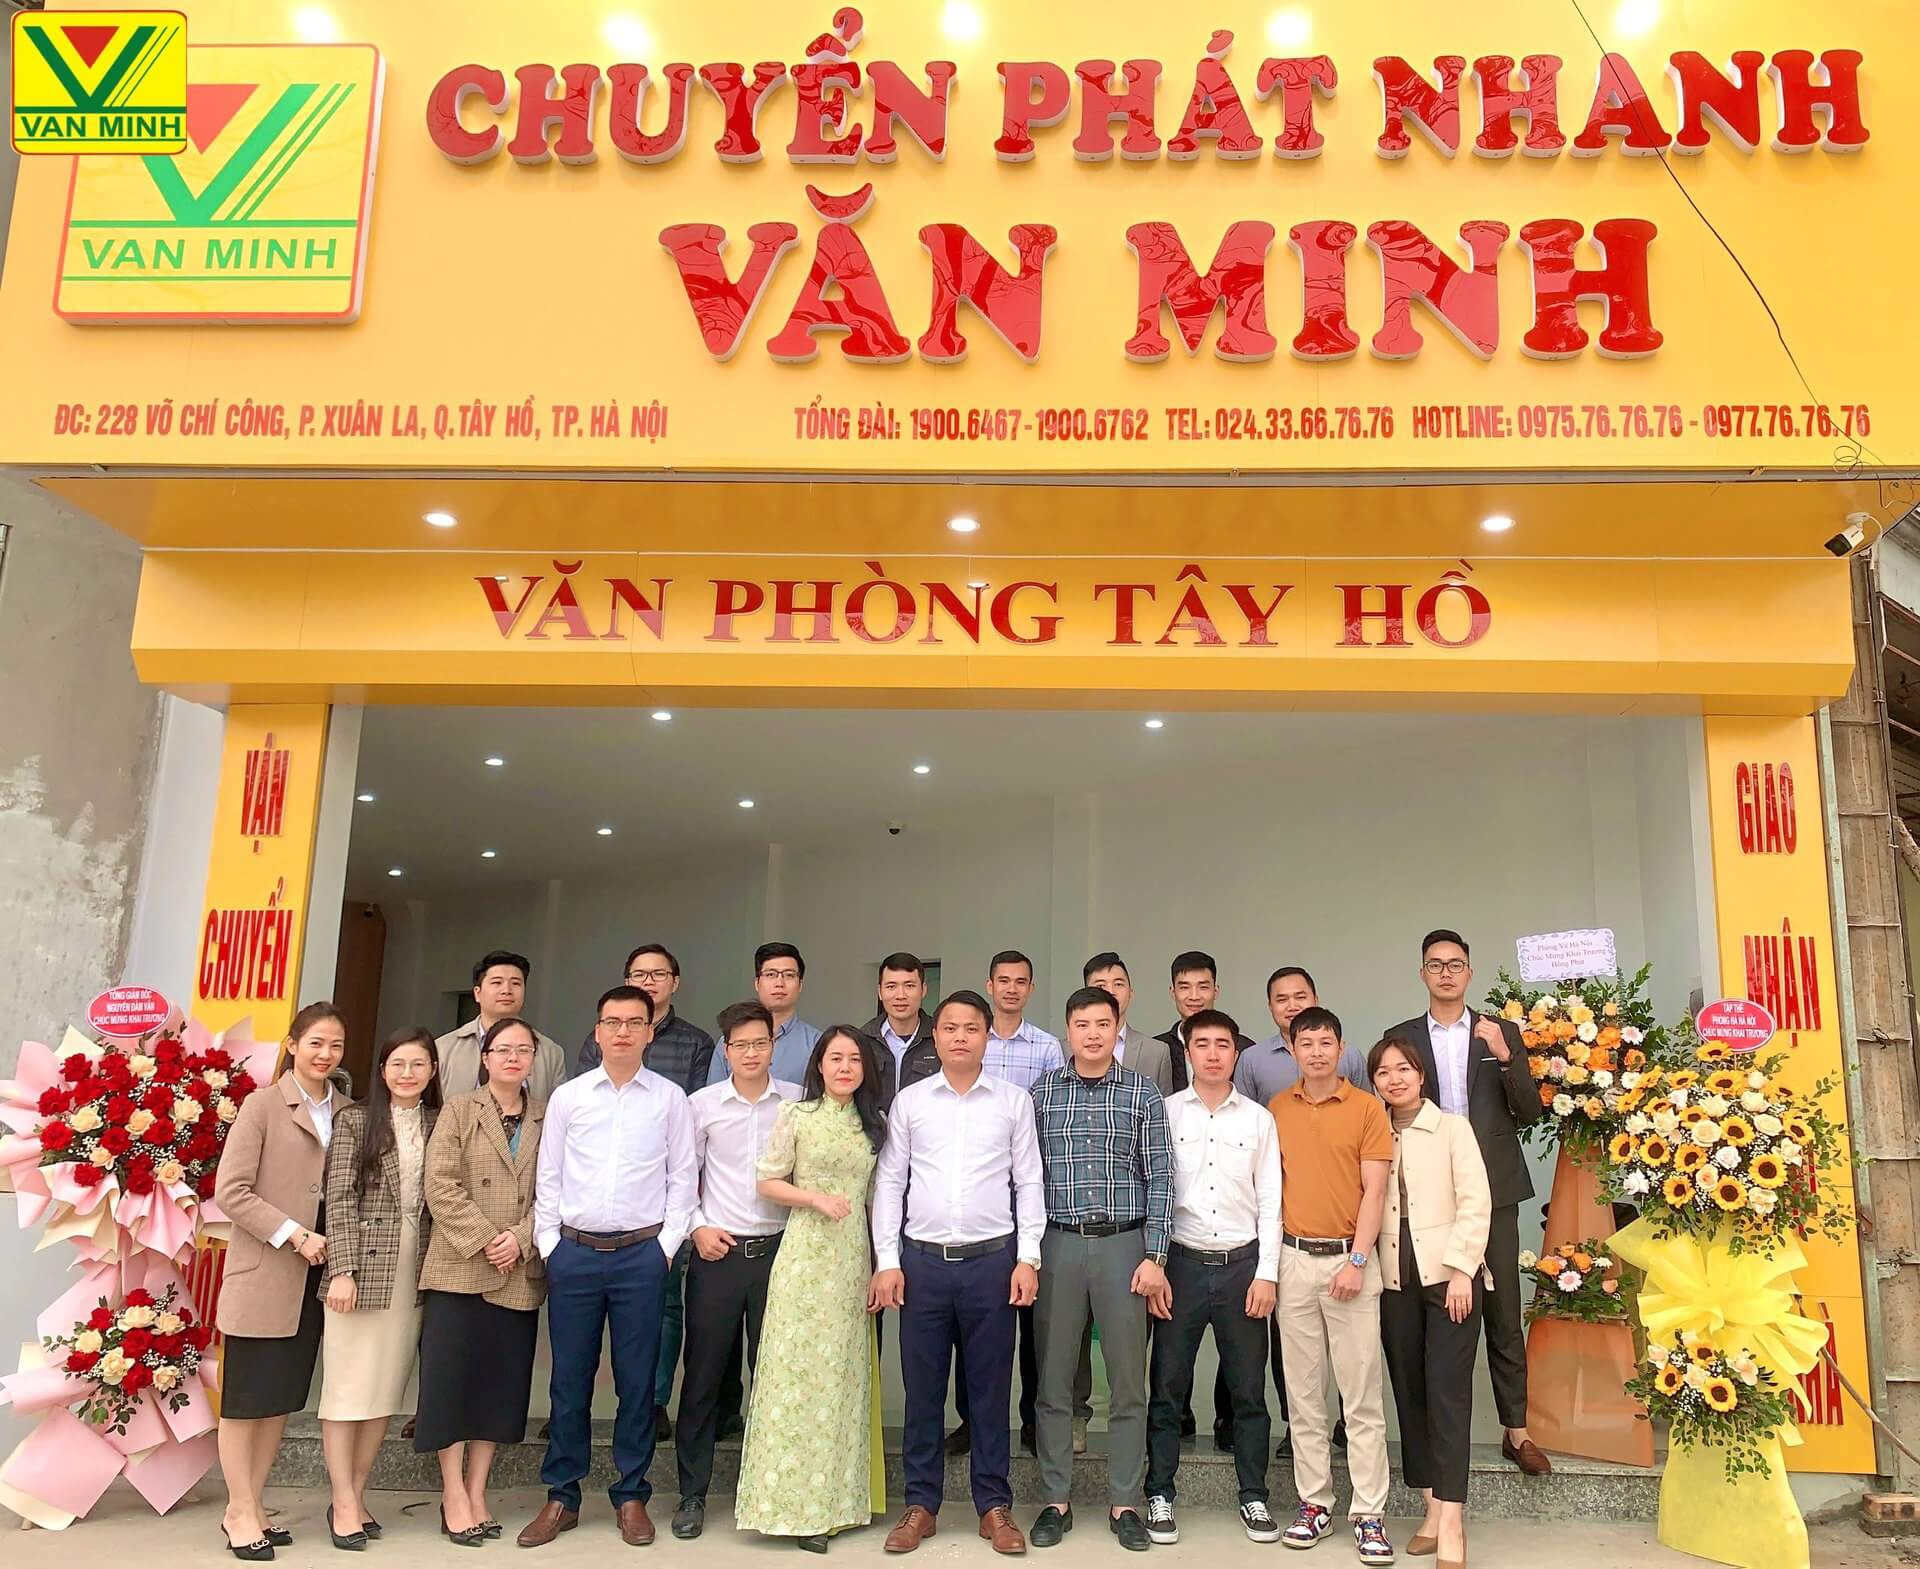 Chi nhánh văn phòng Tây Hồ nhà xe Văn Minh